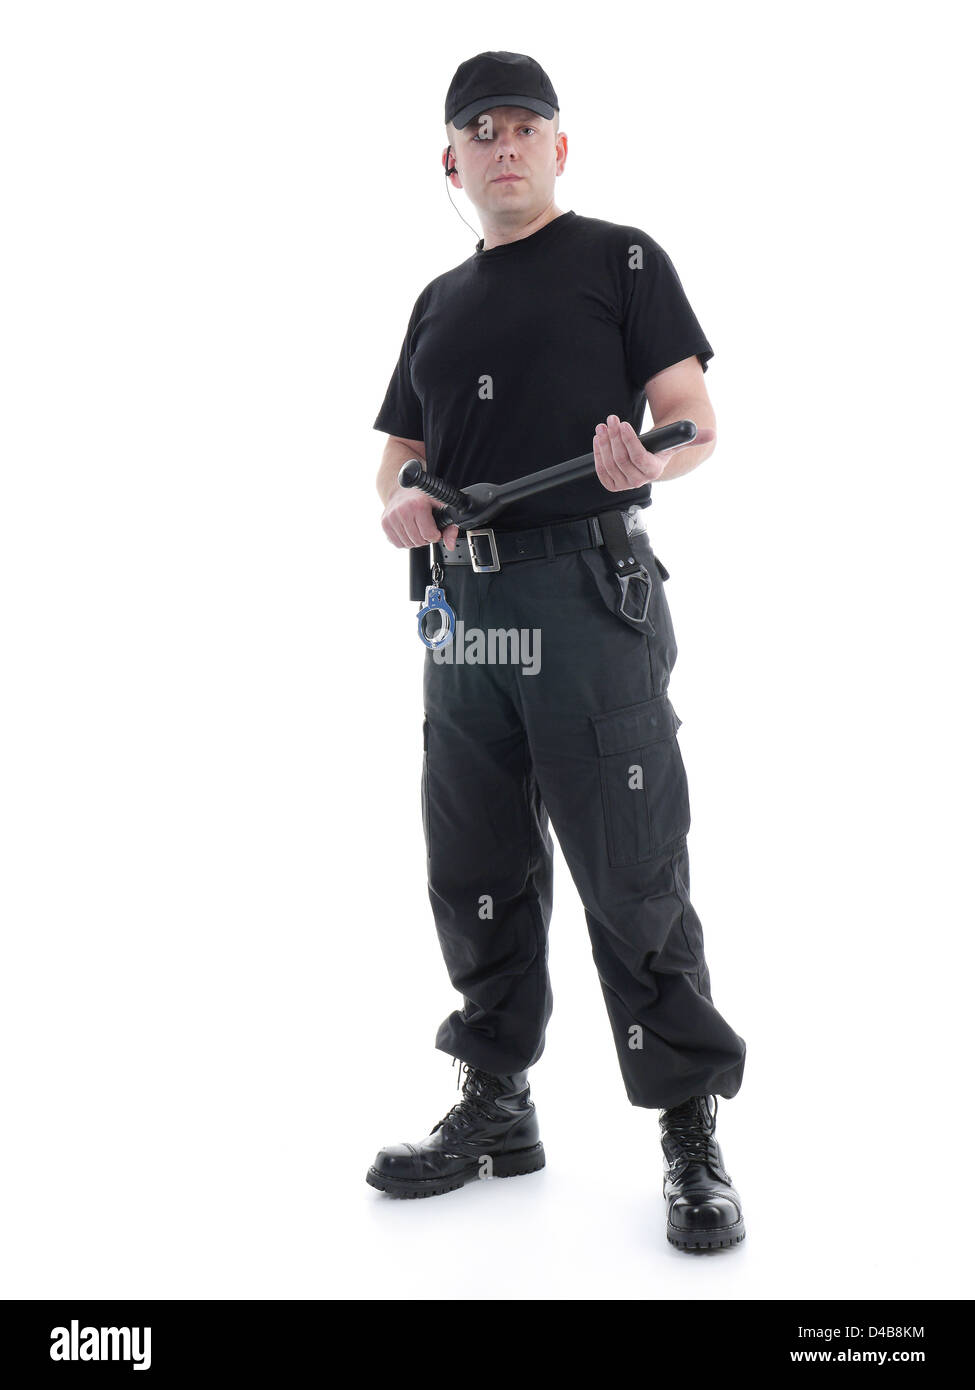 Homme portant l'uniforme noir de sécurité tenue police club dans les deux  mains avec confiance permanent,shot on white Photo Stock - Alamy